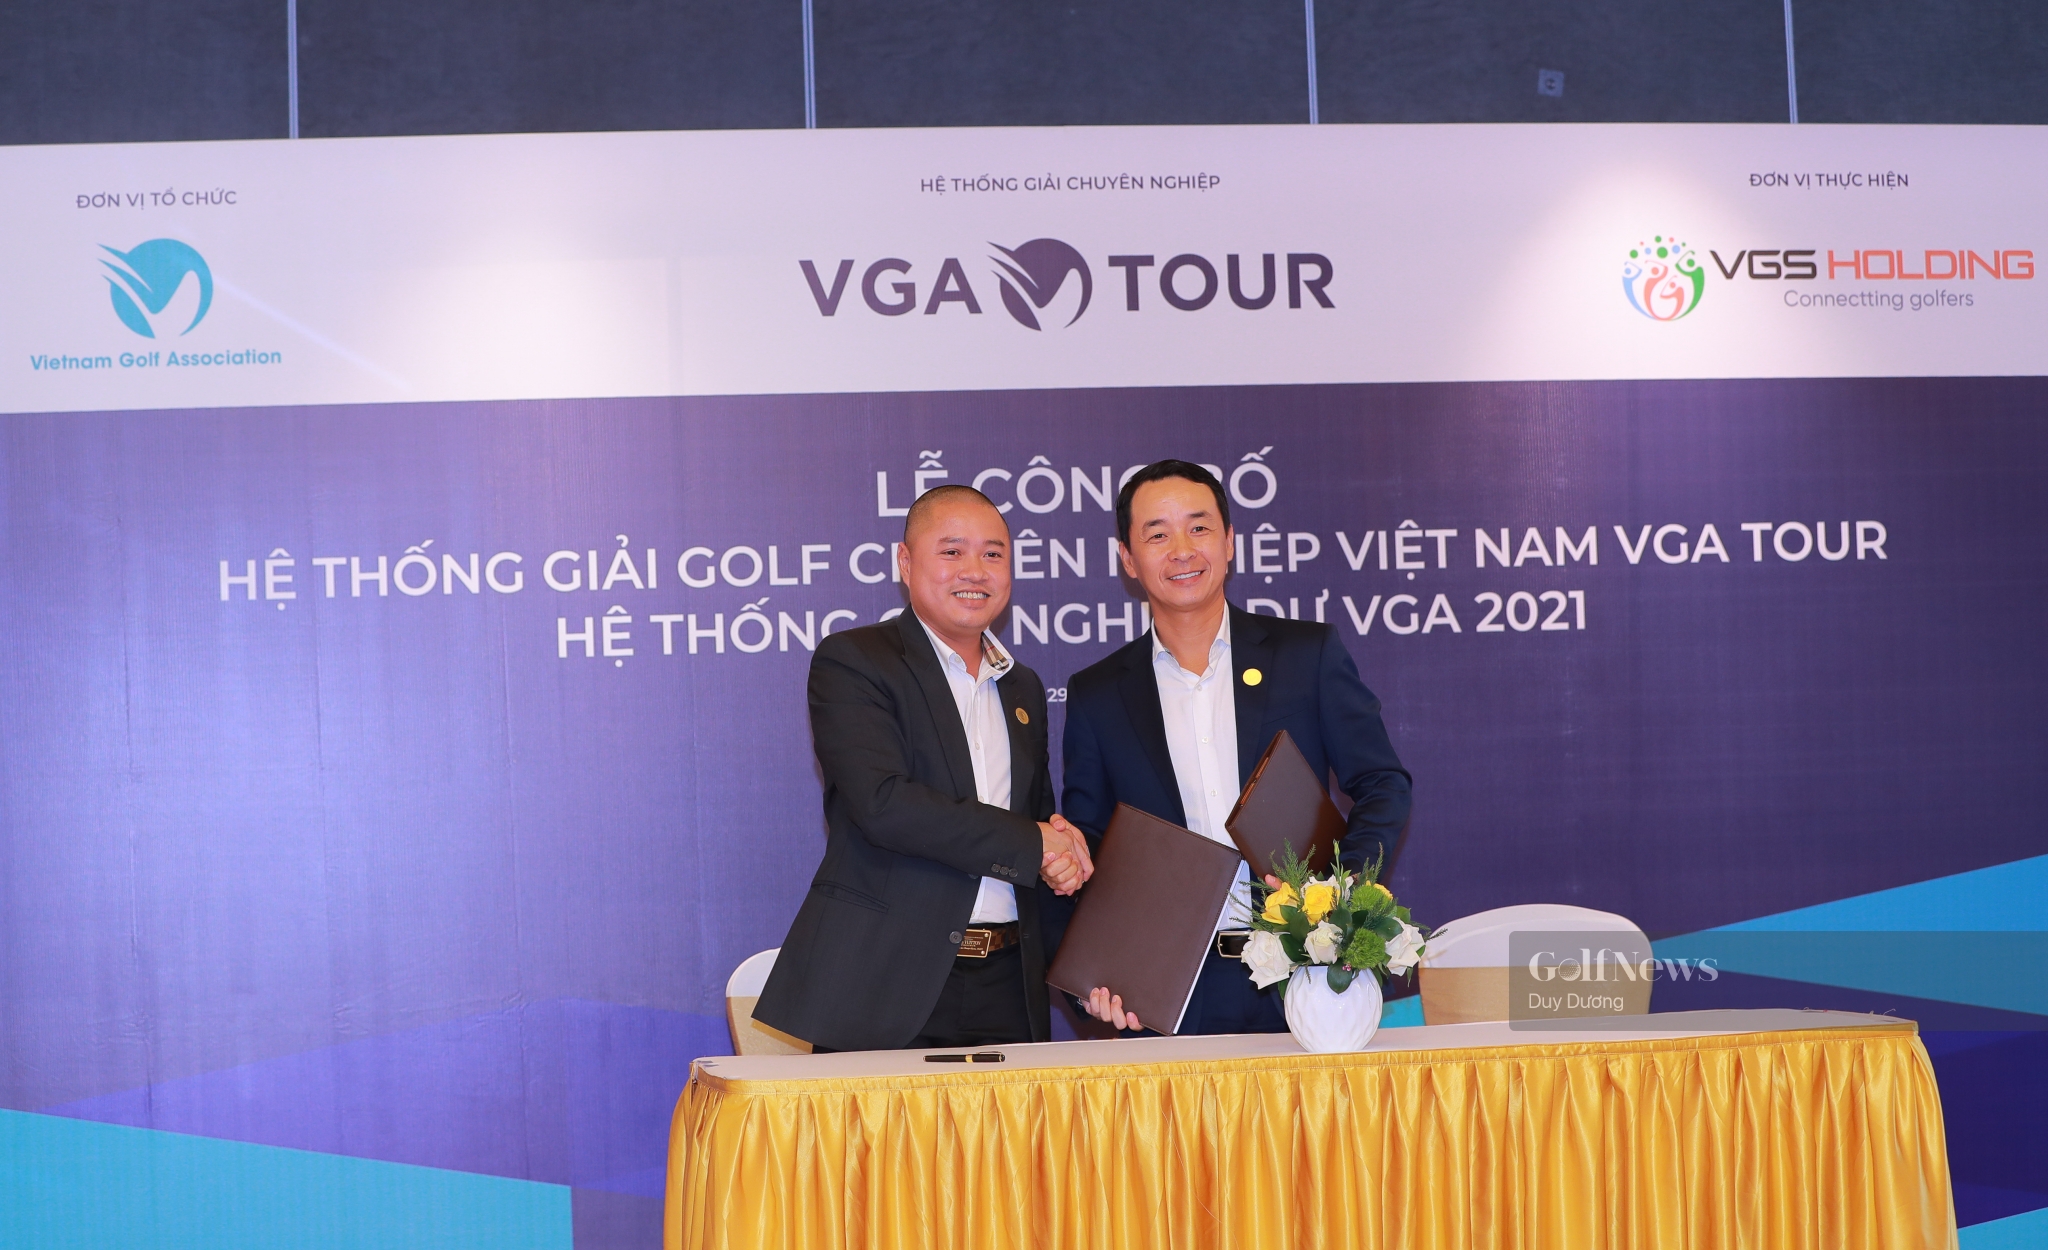 2021 - Dấu ấn mới của golf chuyên nghiệp tại Việt Nam